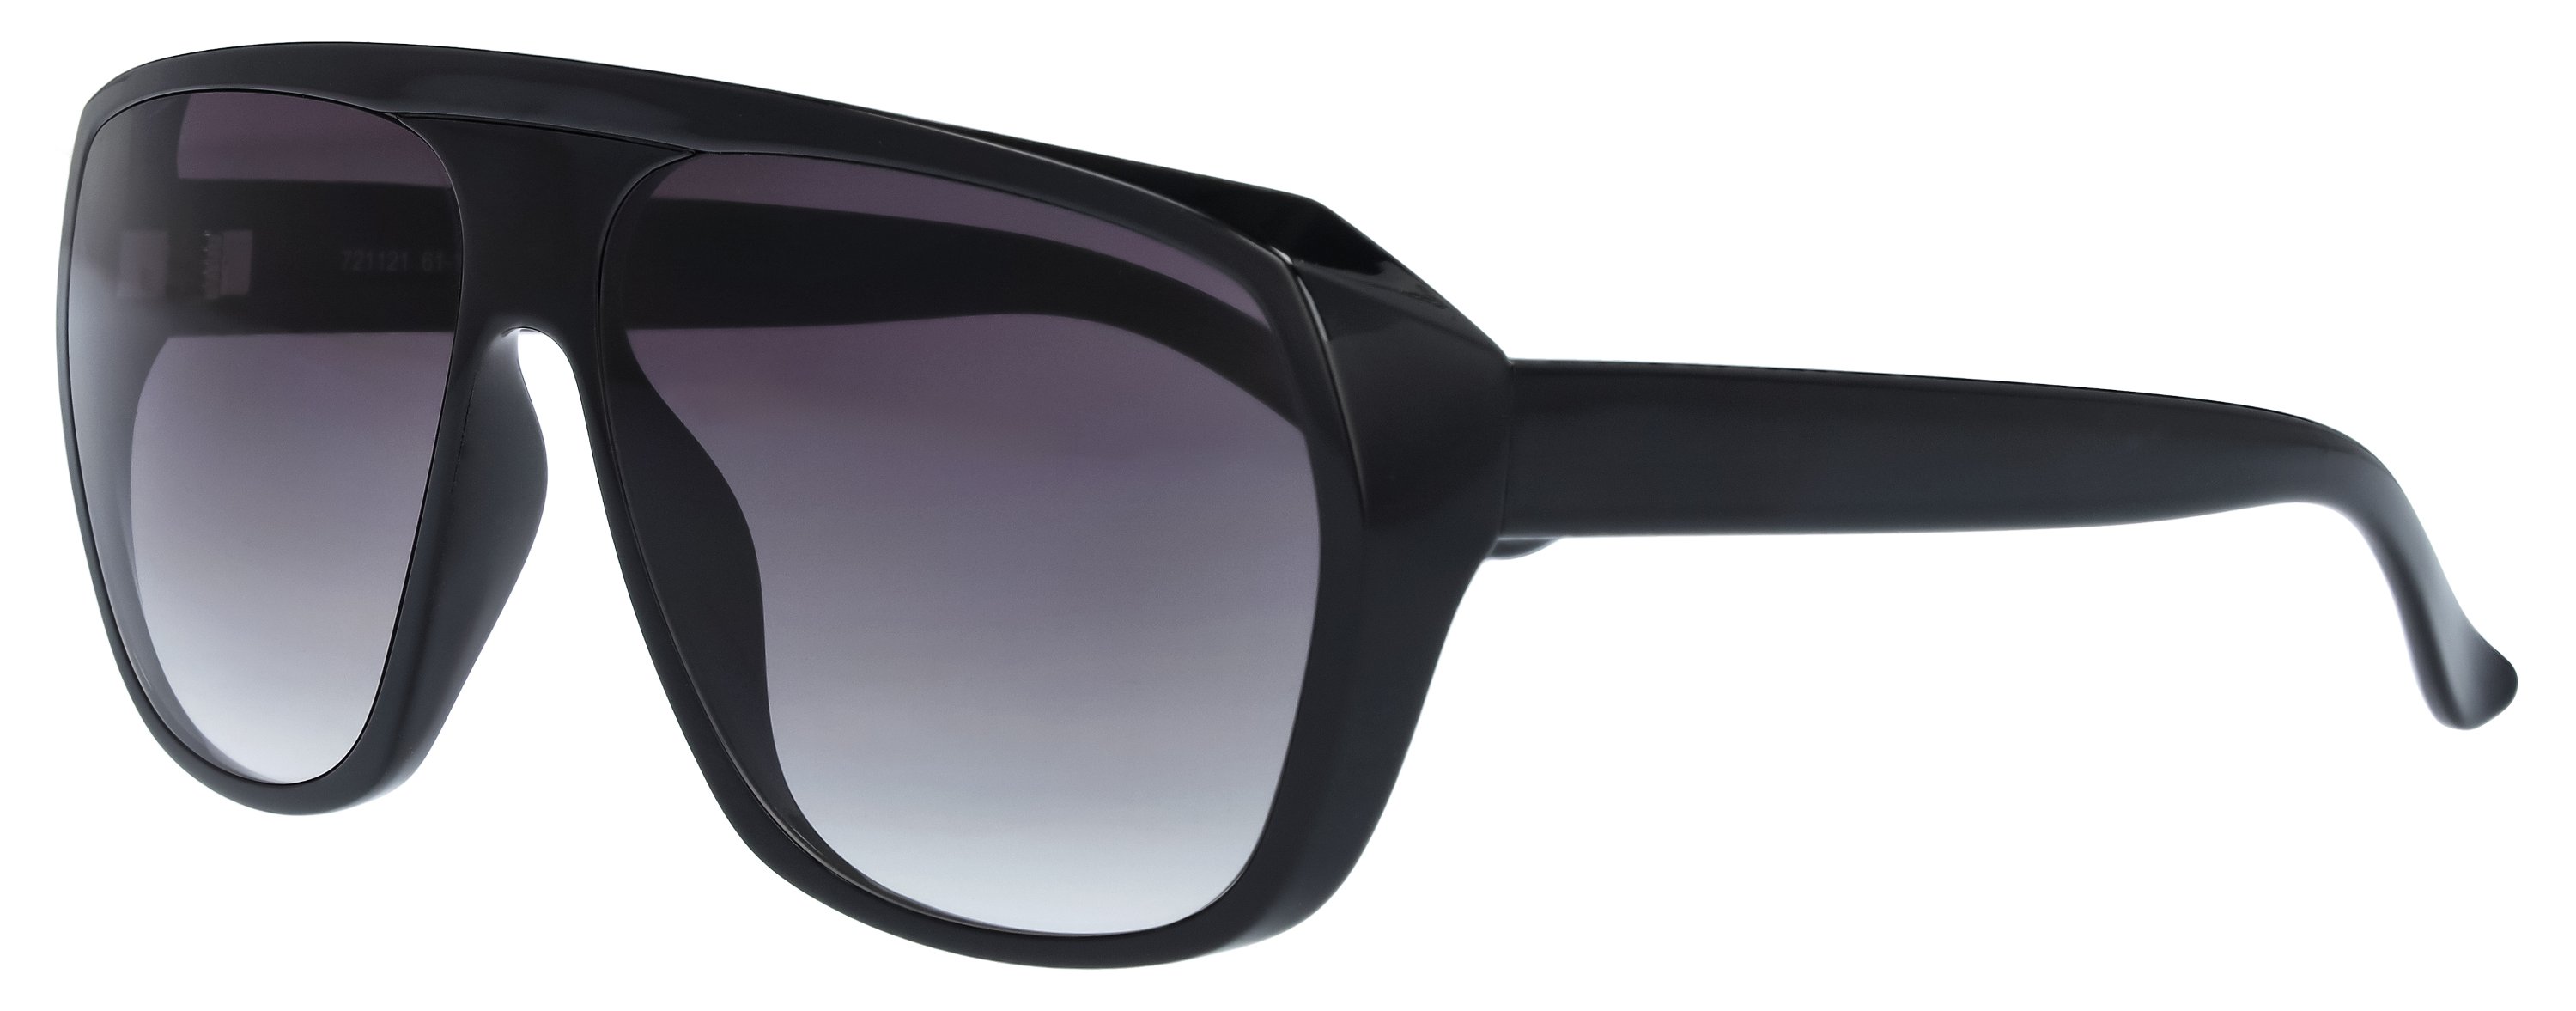 Das Bild zeigt die Sonnenbrille 721121 von der Marke Abele Optik in schwarz.